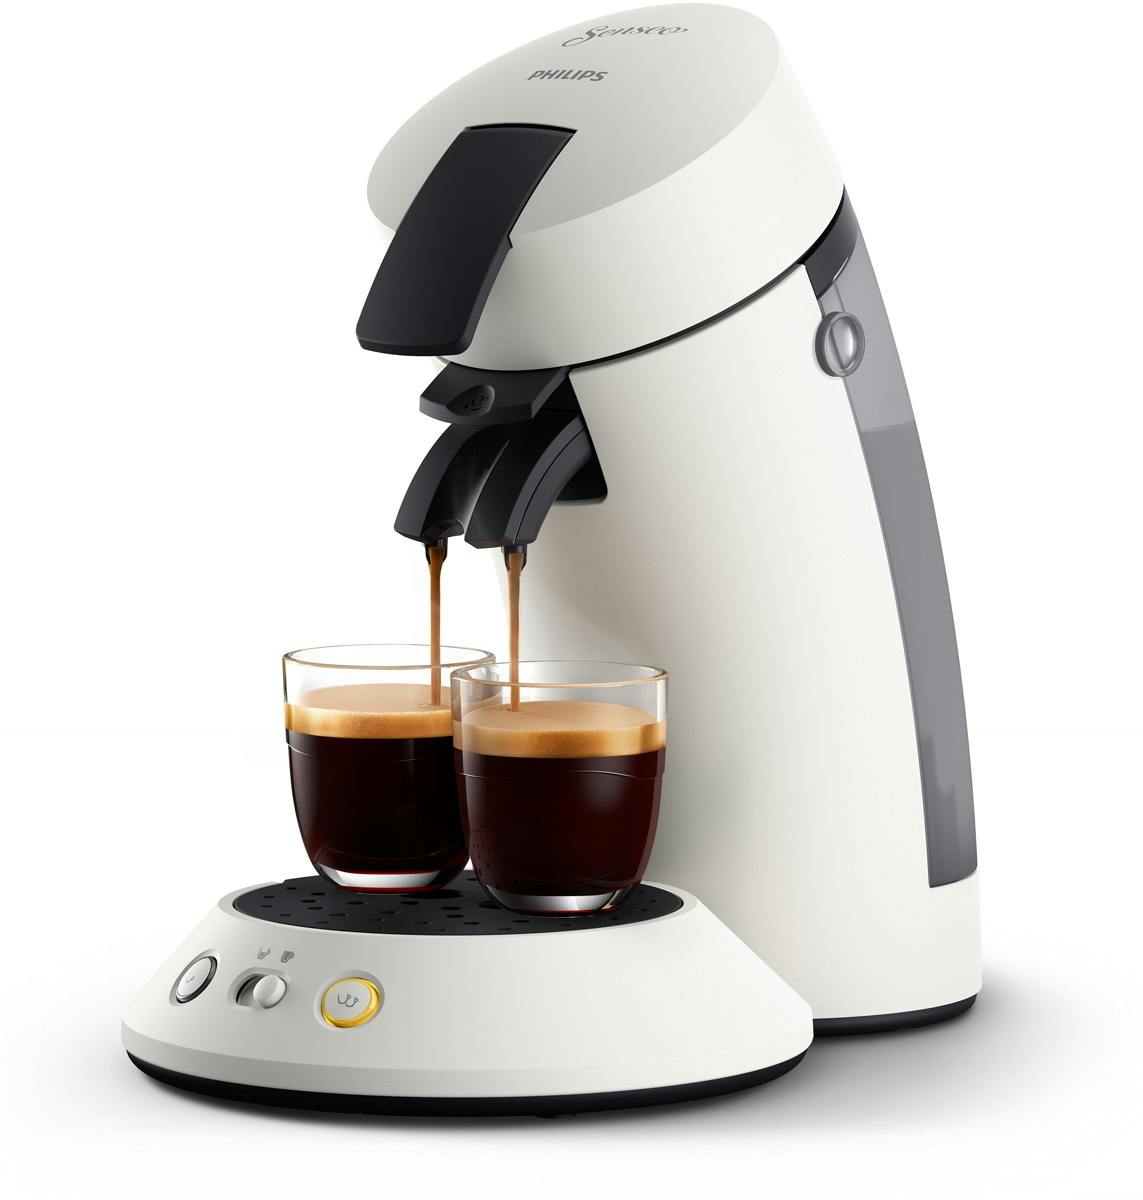 Machine à café :  fait fondre le prix du modèle Philips Senseo Select  Eco - Le Parisien